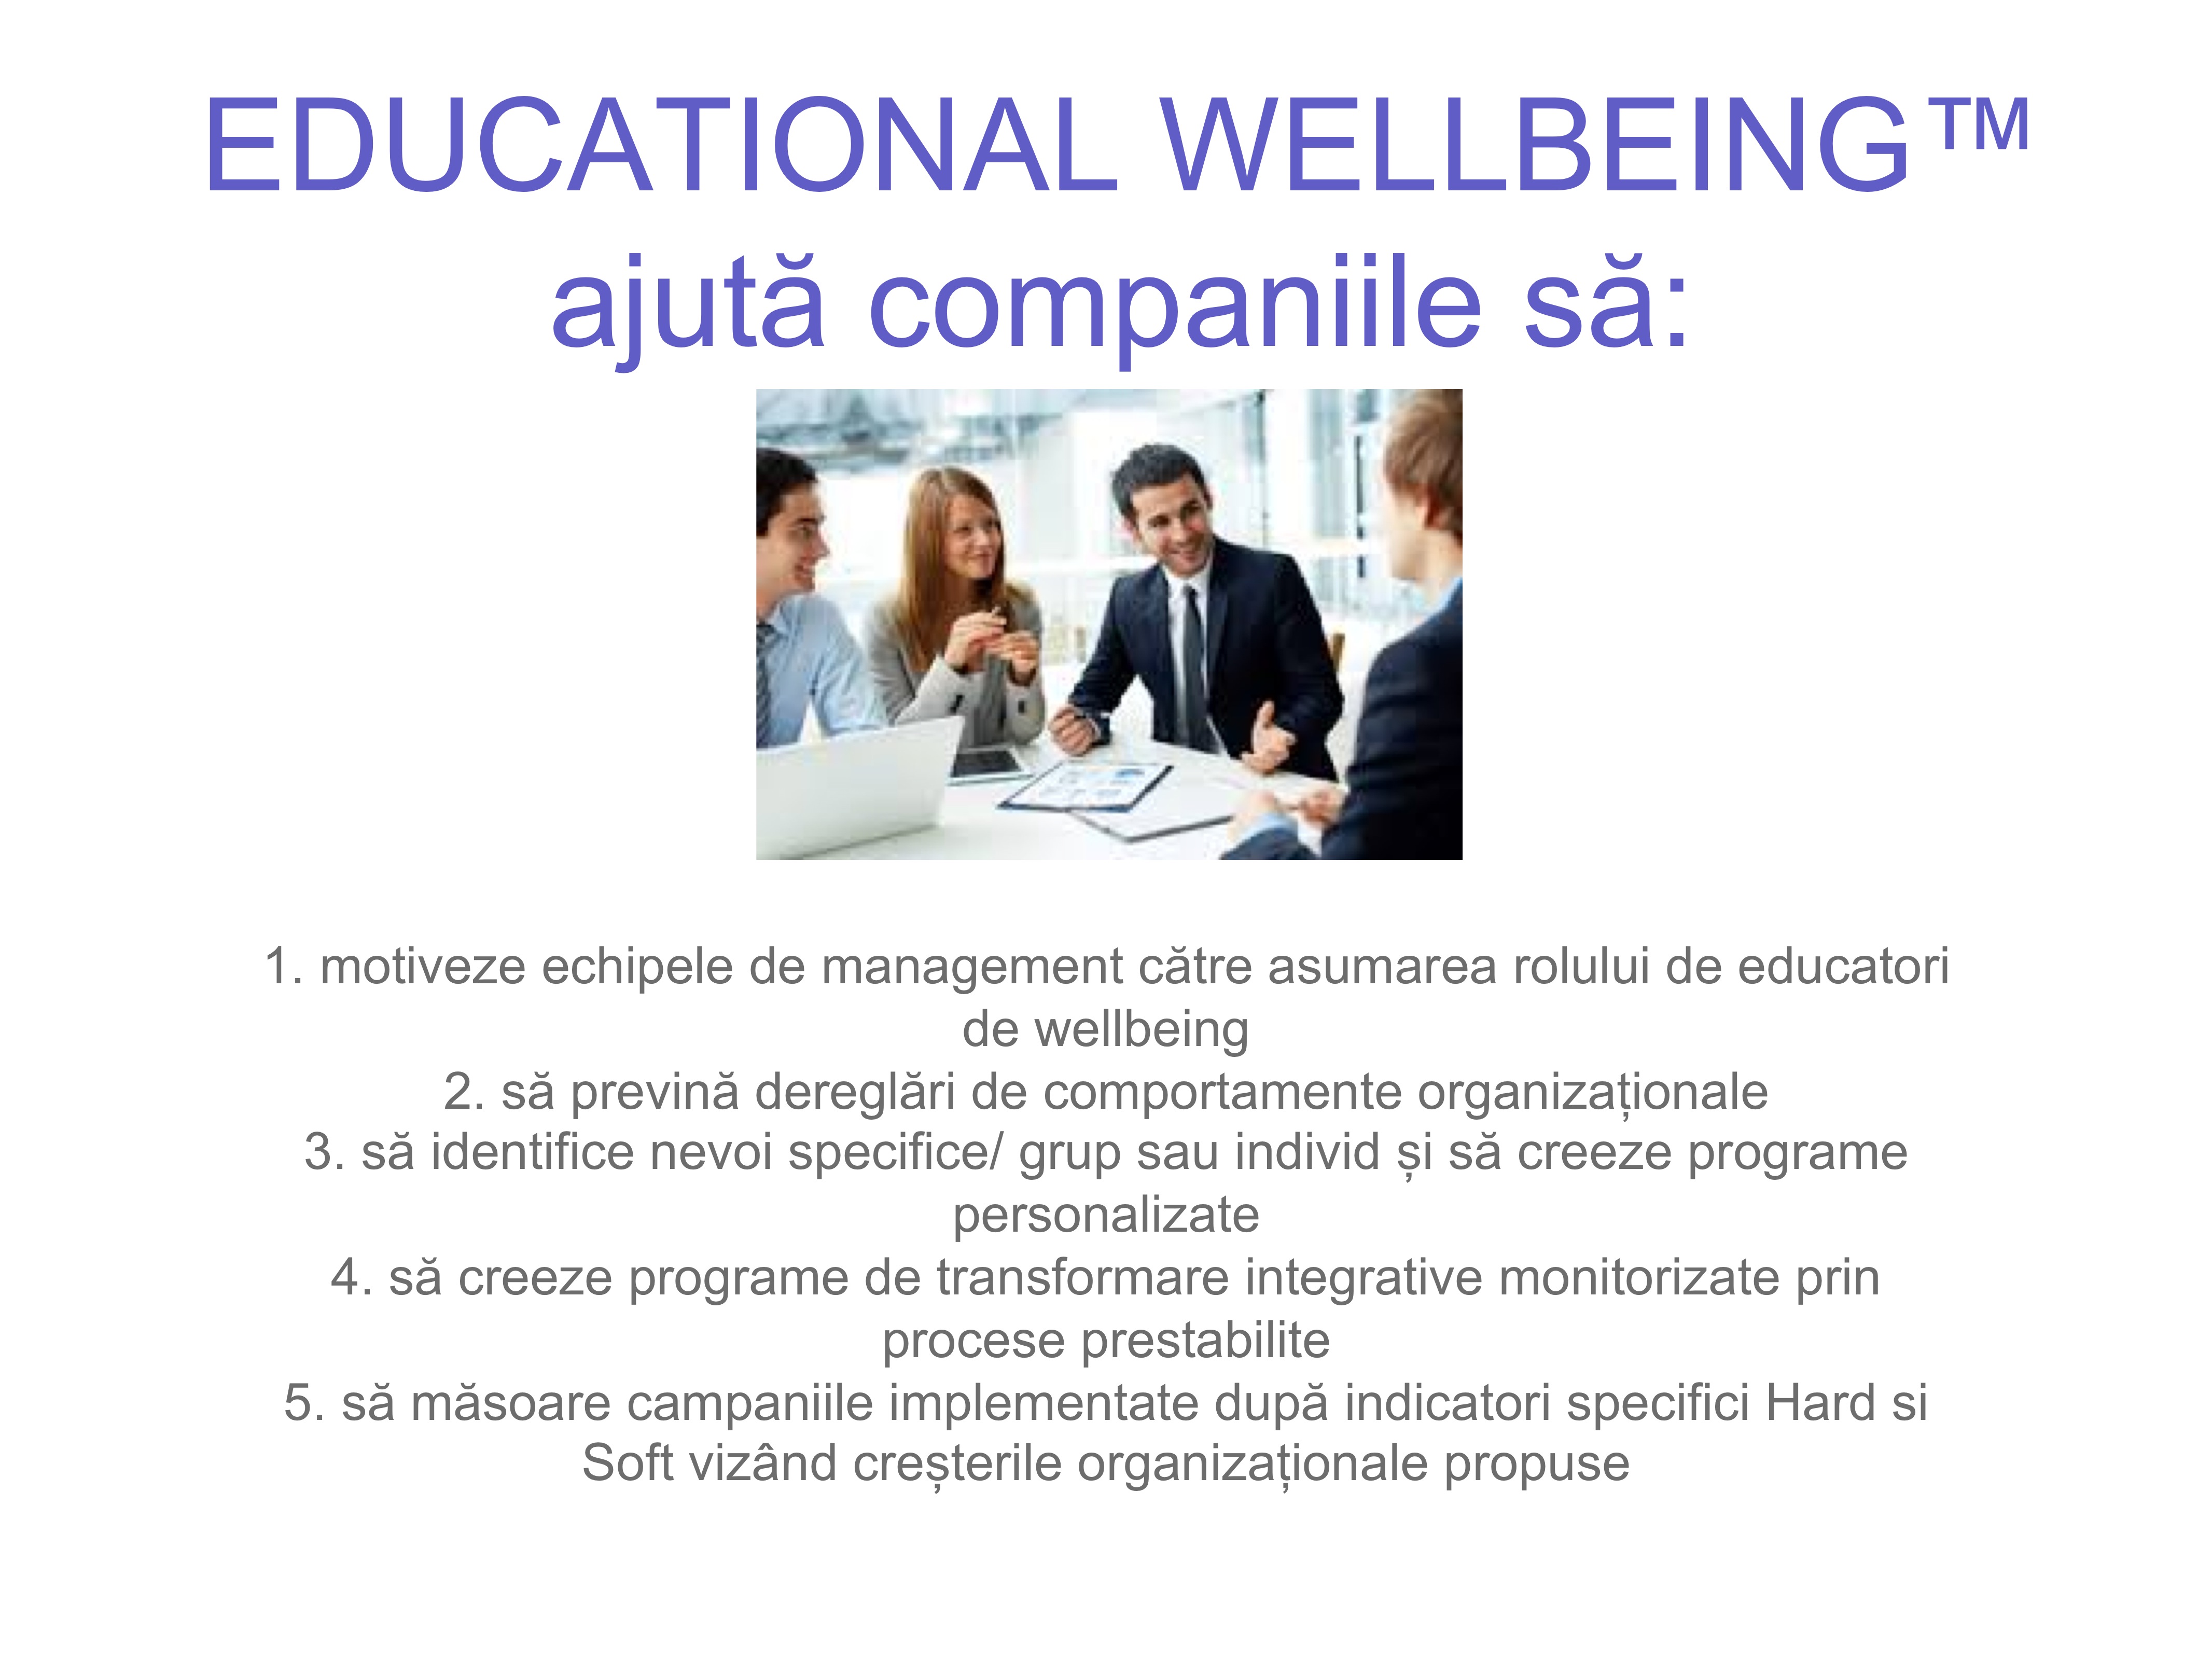 cu-ce-ajuta-educationa-wellbeing